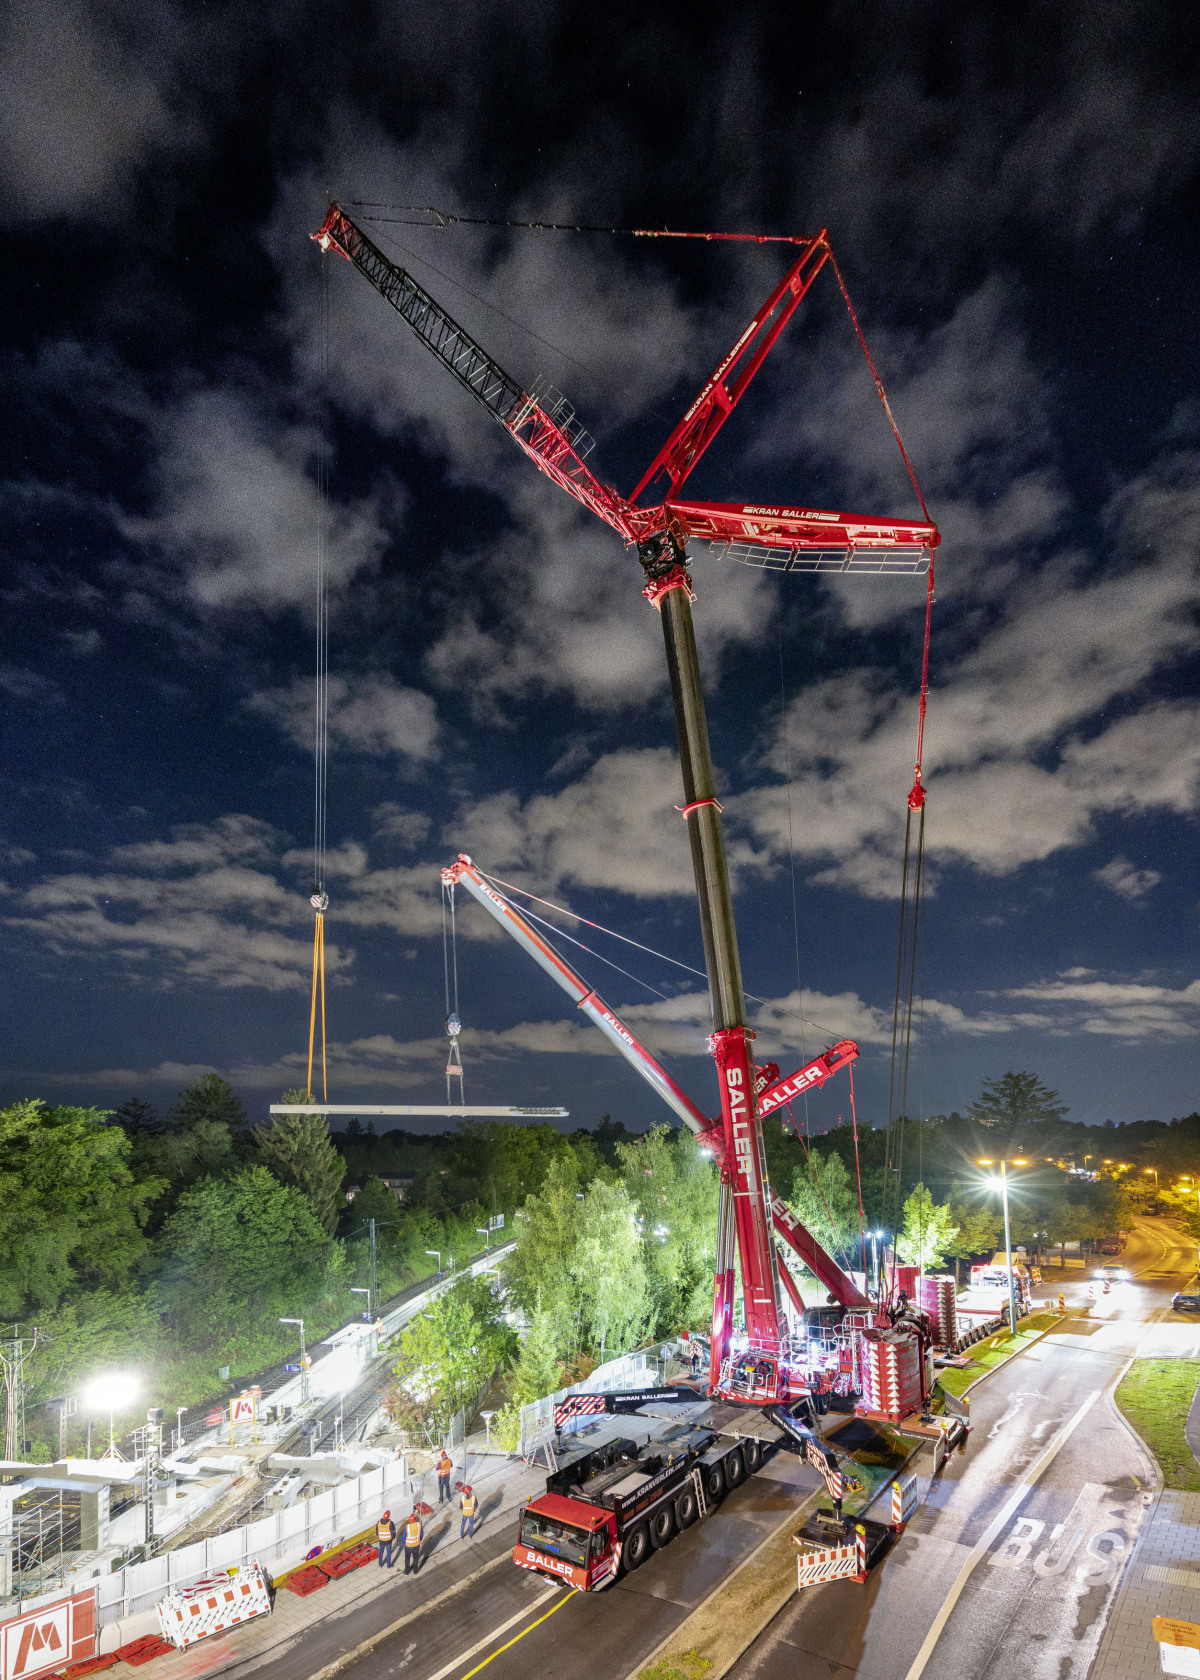 Nachtschicht: mit viel Technik und Manpower absolviert Kran-Saller den Einhub eines 61 Tonnen schweren Bauteils für eine Fußgängerbrücke in München-Solln.